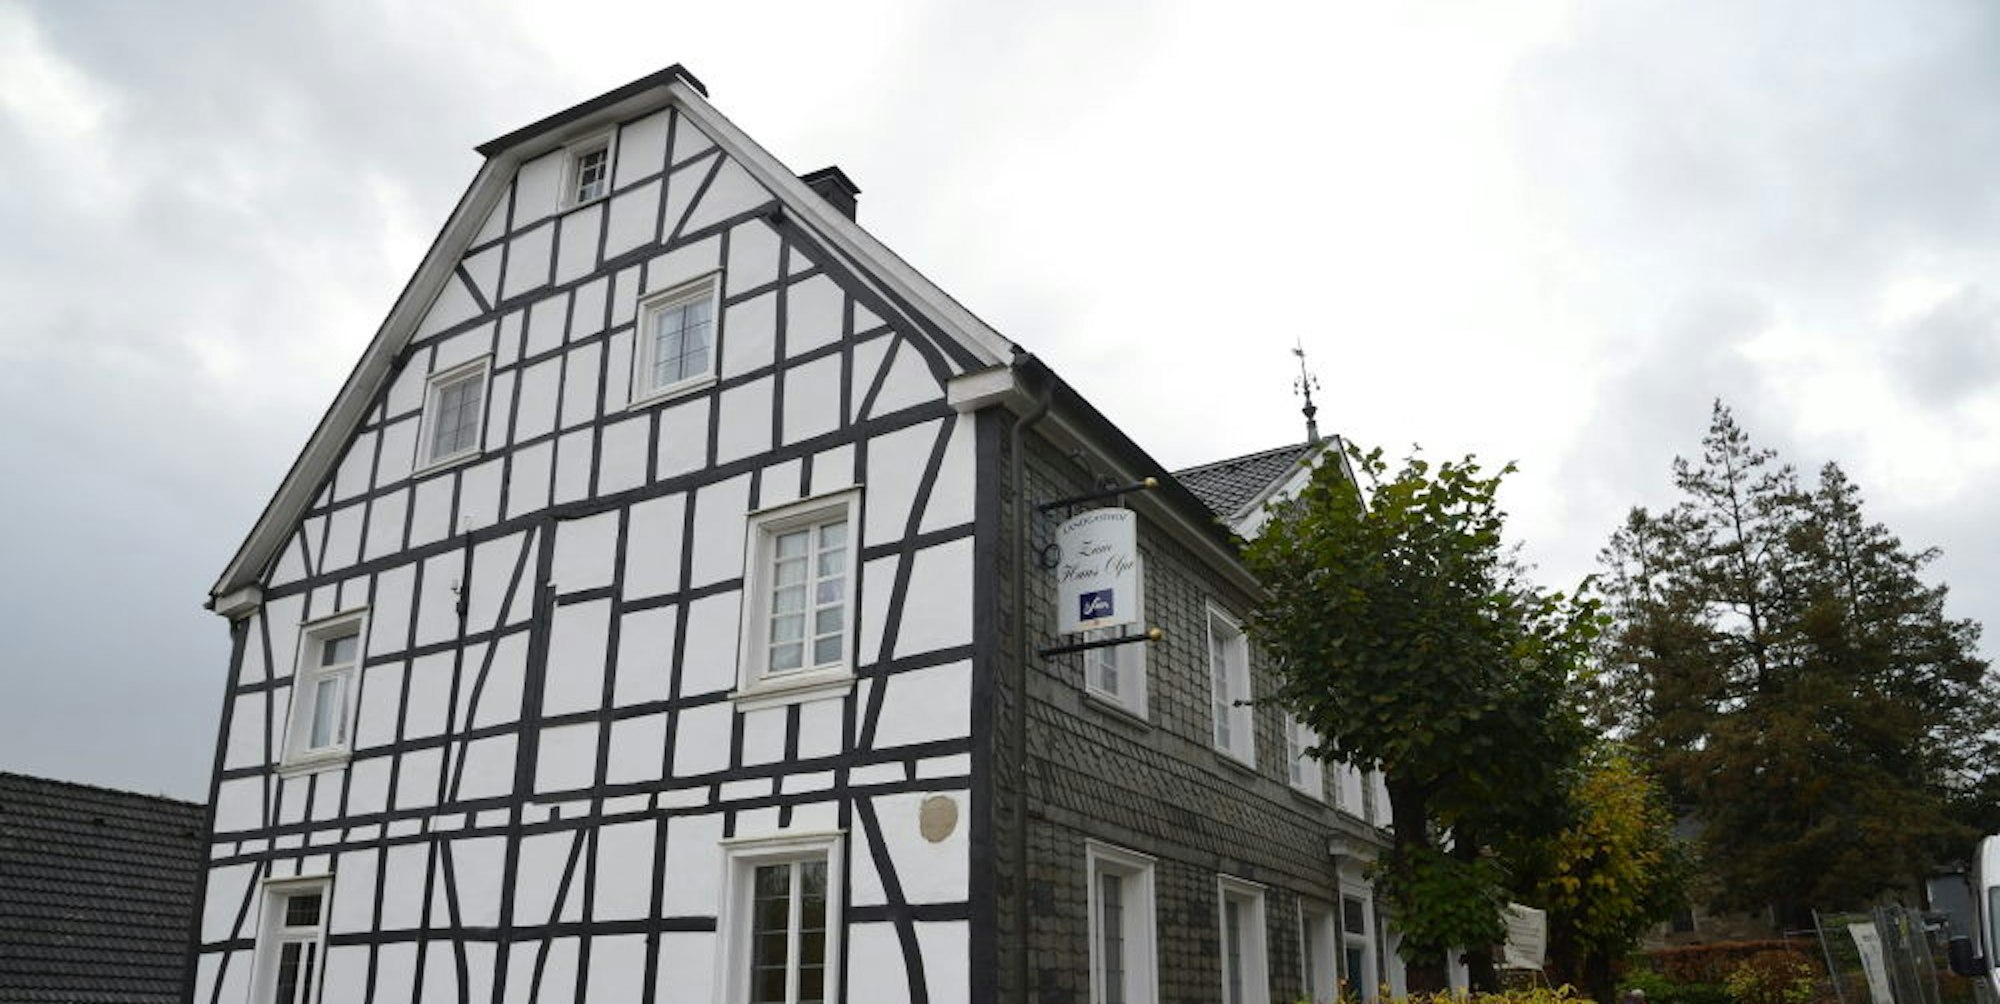 Erbaut wurde das Fachwerkhaus vom Bürgermeister Johann Breidenbach im Jahr 1817.